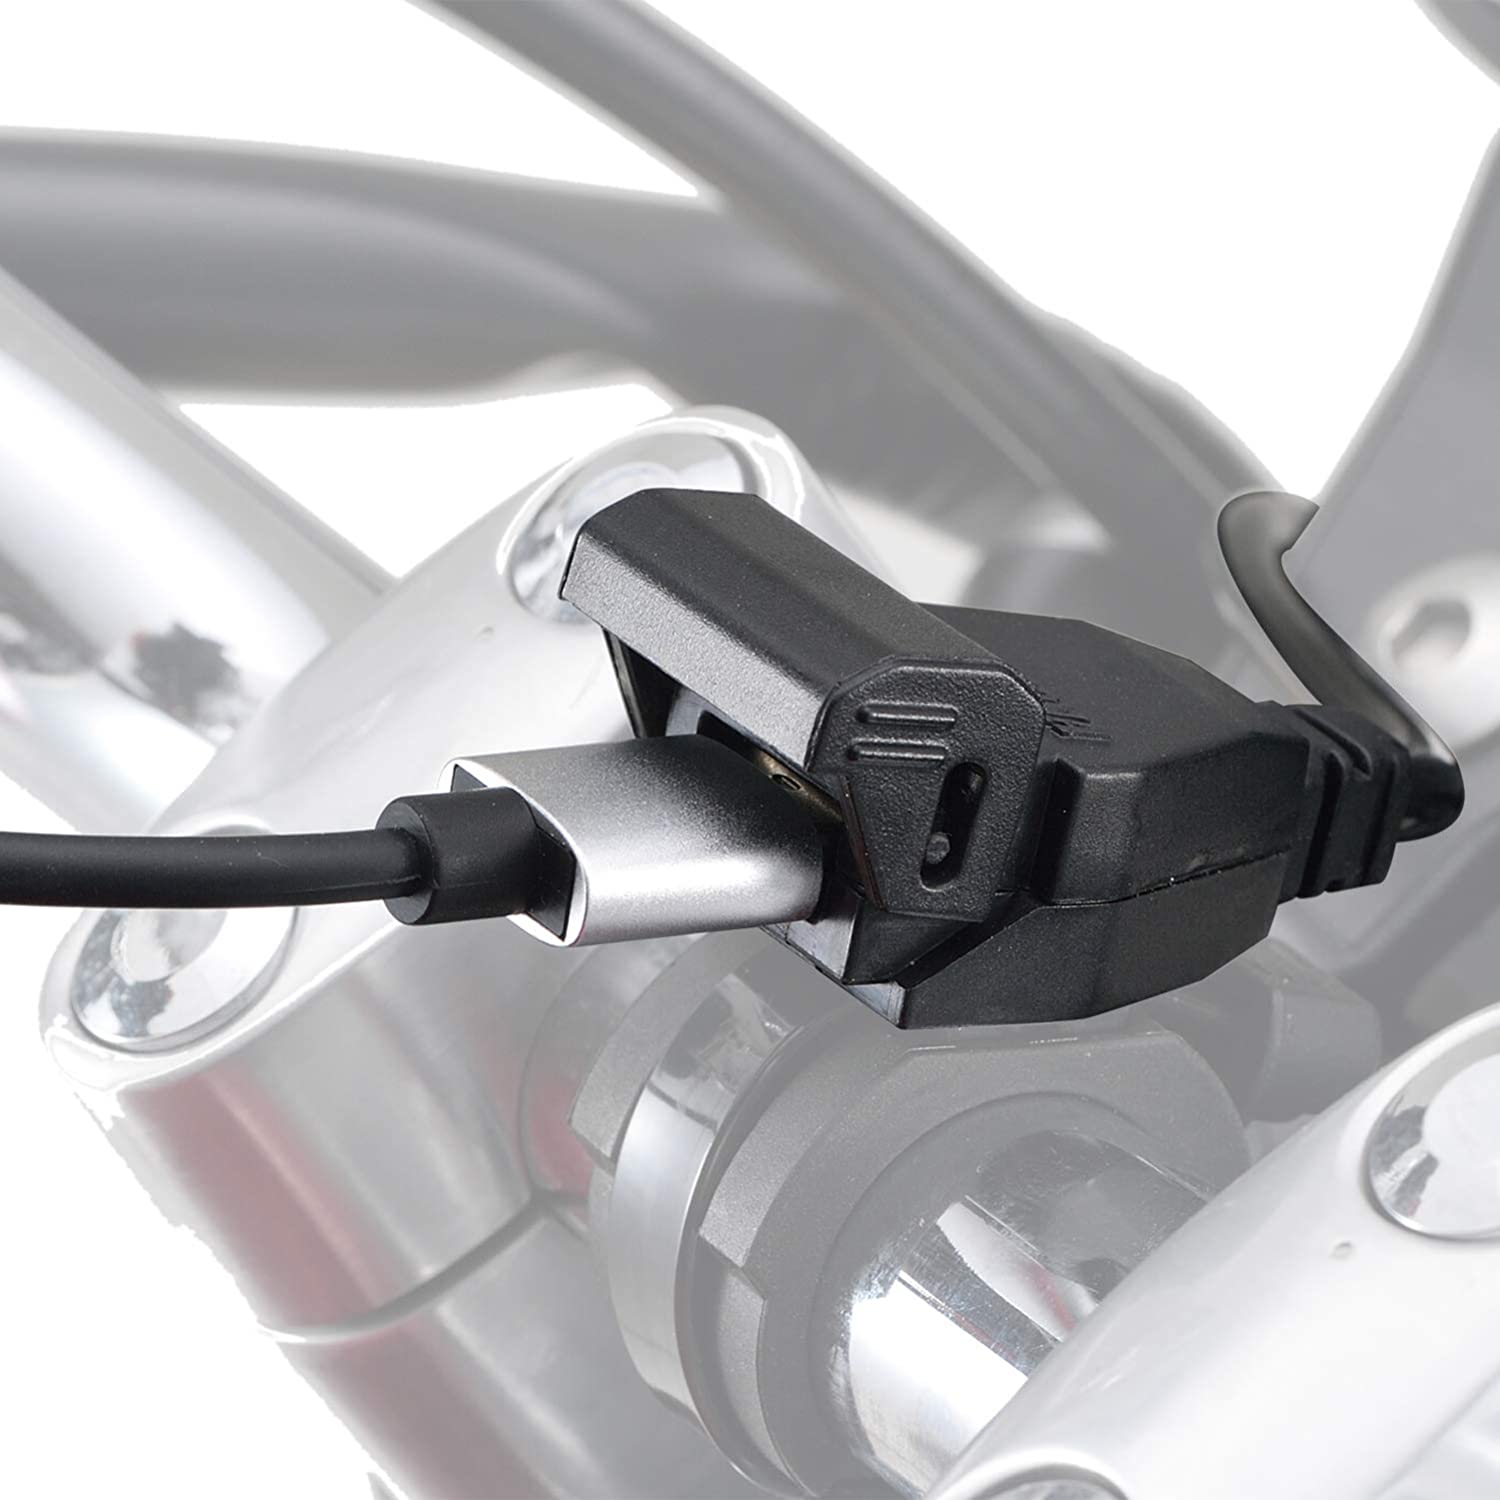 人気急上昇 デイトナ バイク用 USB電源 5V 2.4A ブレーキスイッチ接続 メインキー連動 USB-A 1ポート 99502 送料無料 